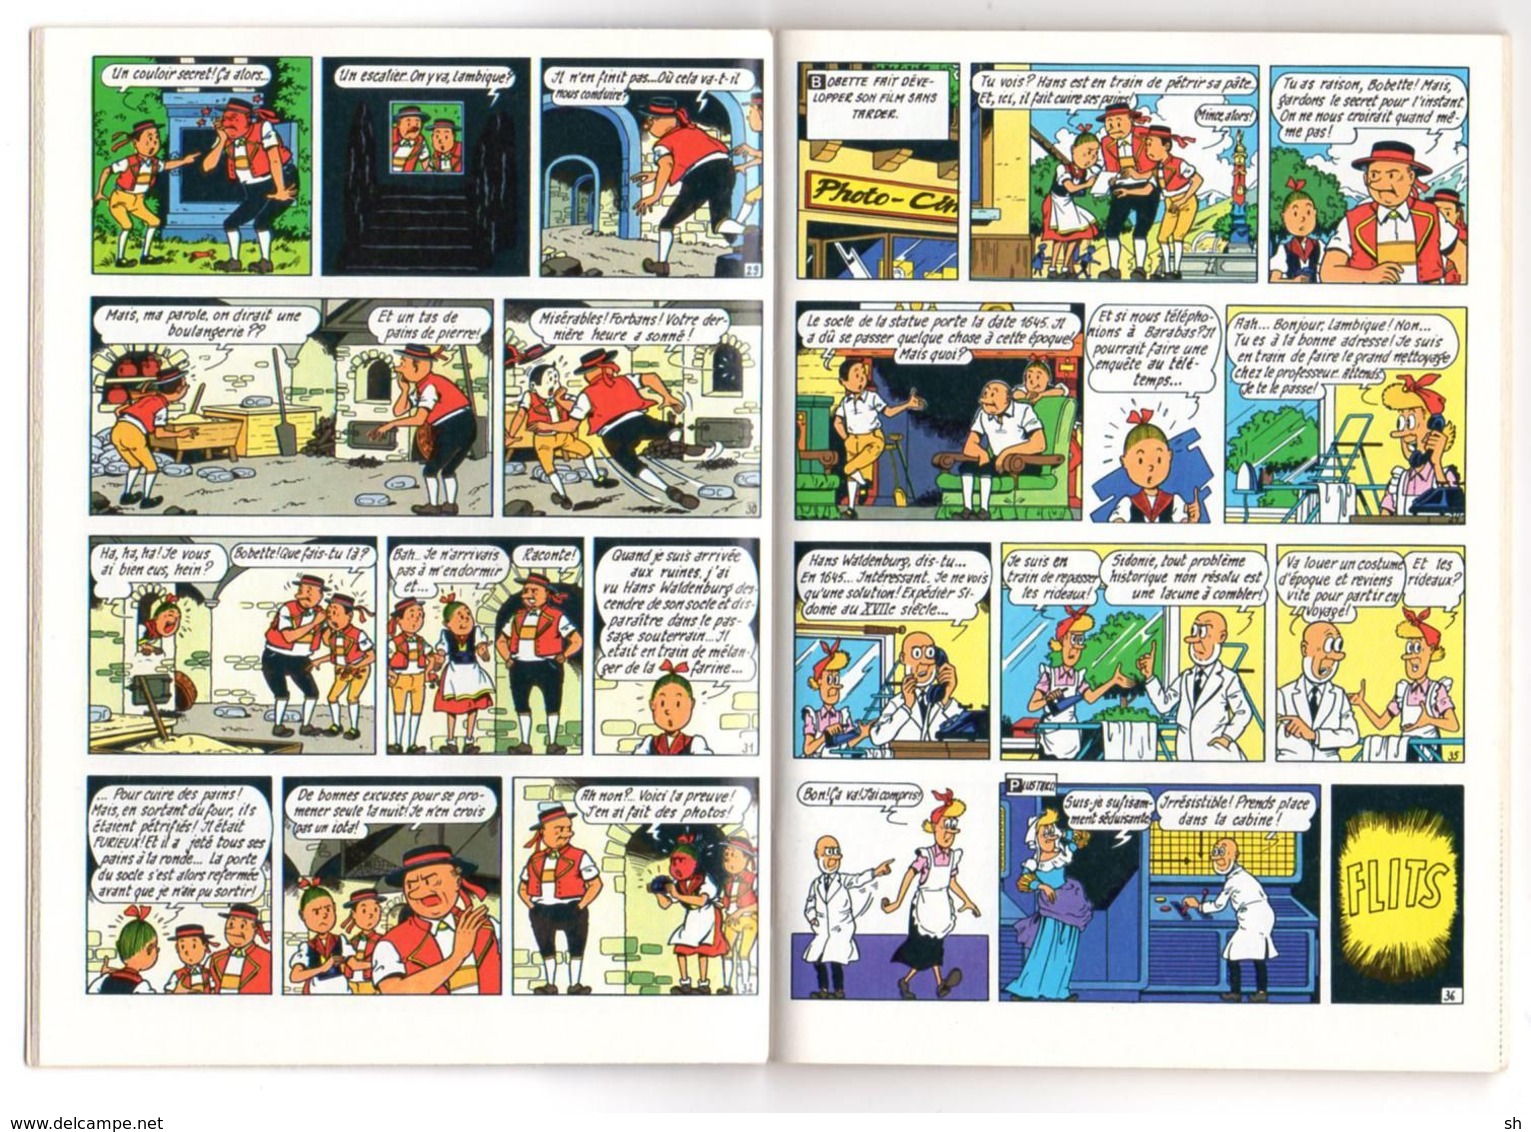 Bob & Bobette - Suske En Wiske - 2x Mini BD Strip - Nr 5 En 9 - Dash - Verbogen Wolk - Stenen Broden - Pains De Pierre - Suske & Wiske